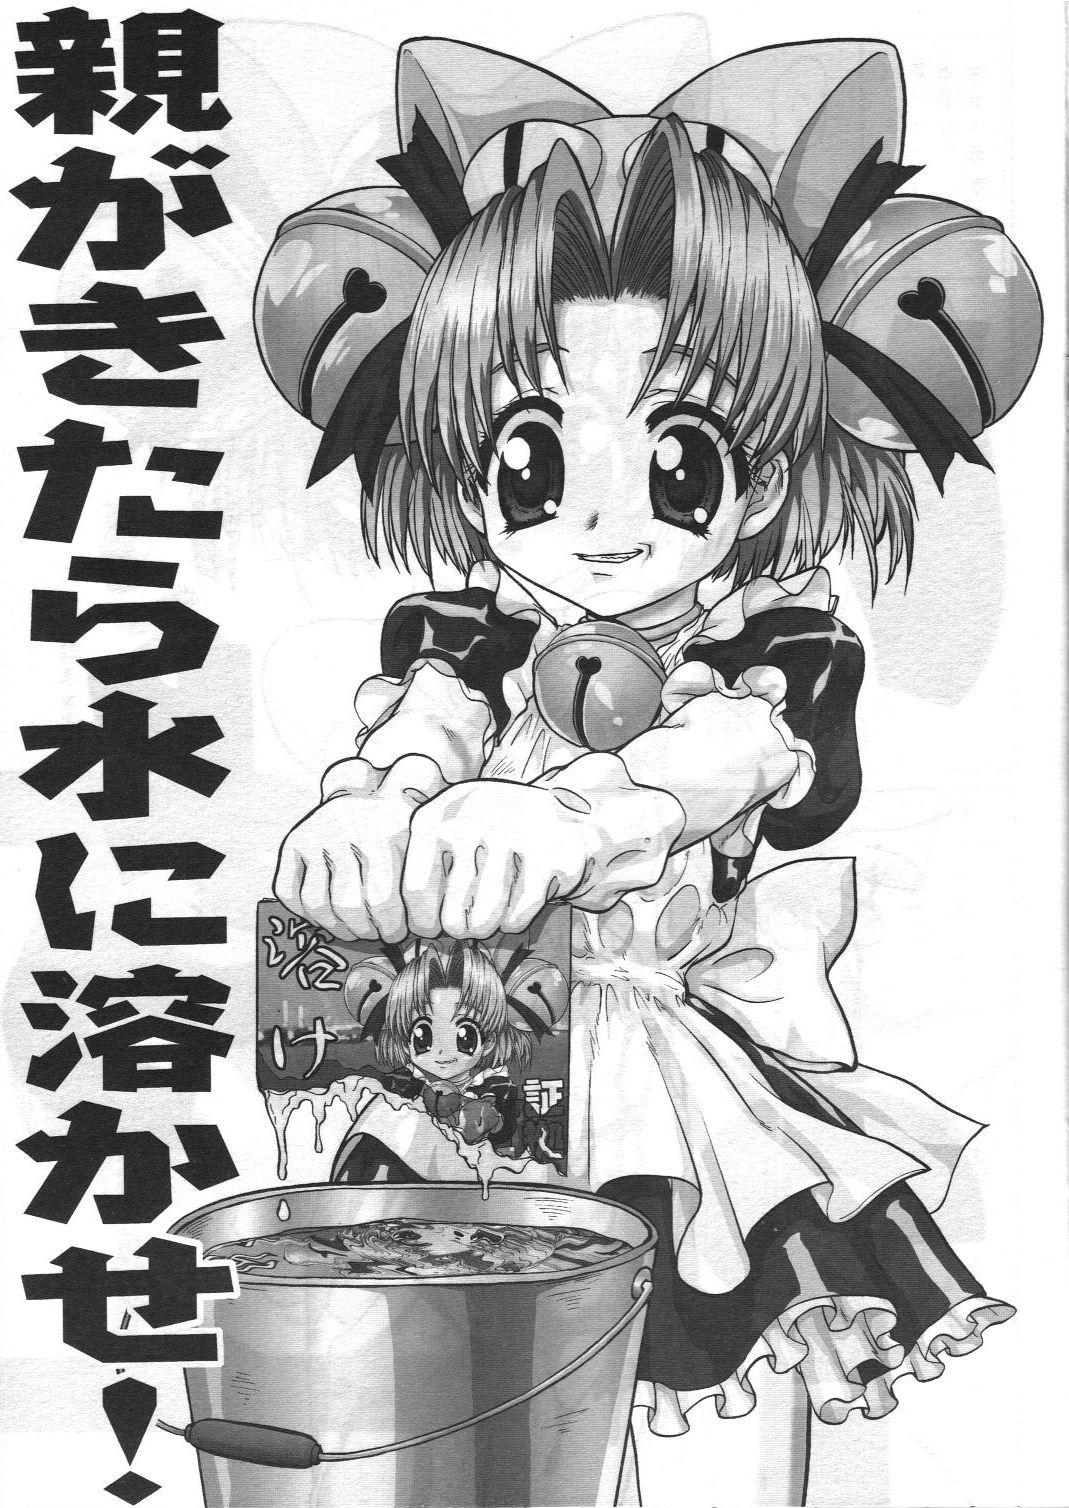 Home Shouko wo Nokosazu Tokeru! - Di gi charat Doggy Style - Page 4